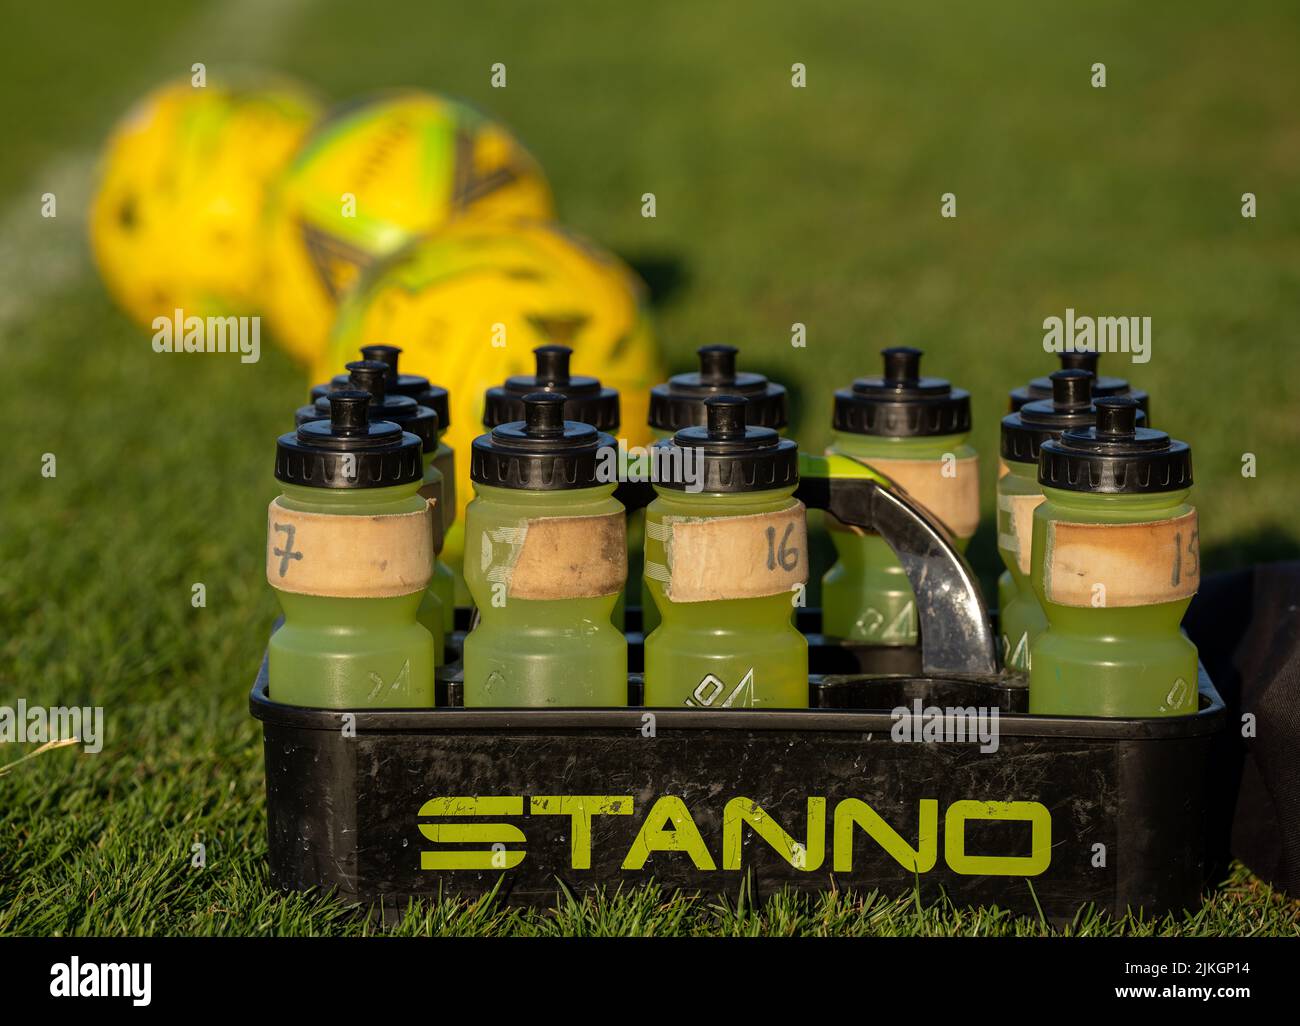 Les bouteilles d'eau rechargeables en plastique jaune avec des hauts noirs sont lovées dans un support STANNO sur un terrain de football en herbe (football). Trois boules jaunes hors foyer Banque D'Images